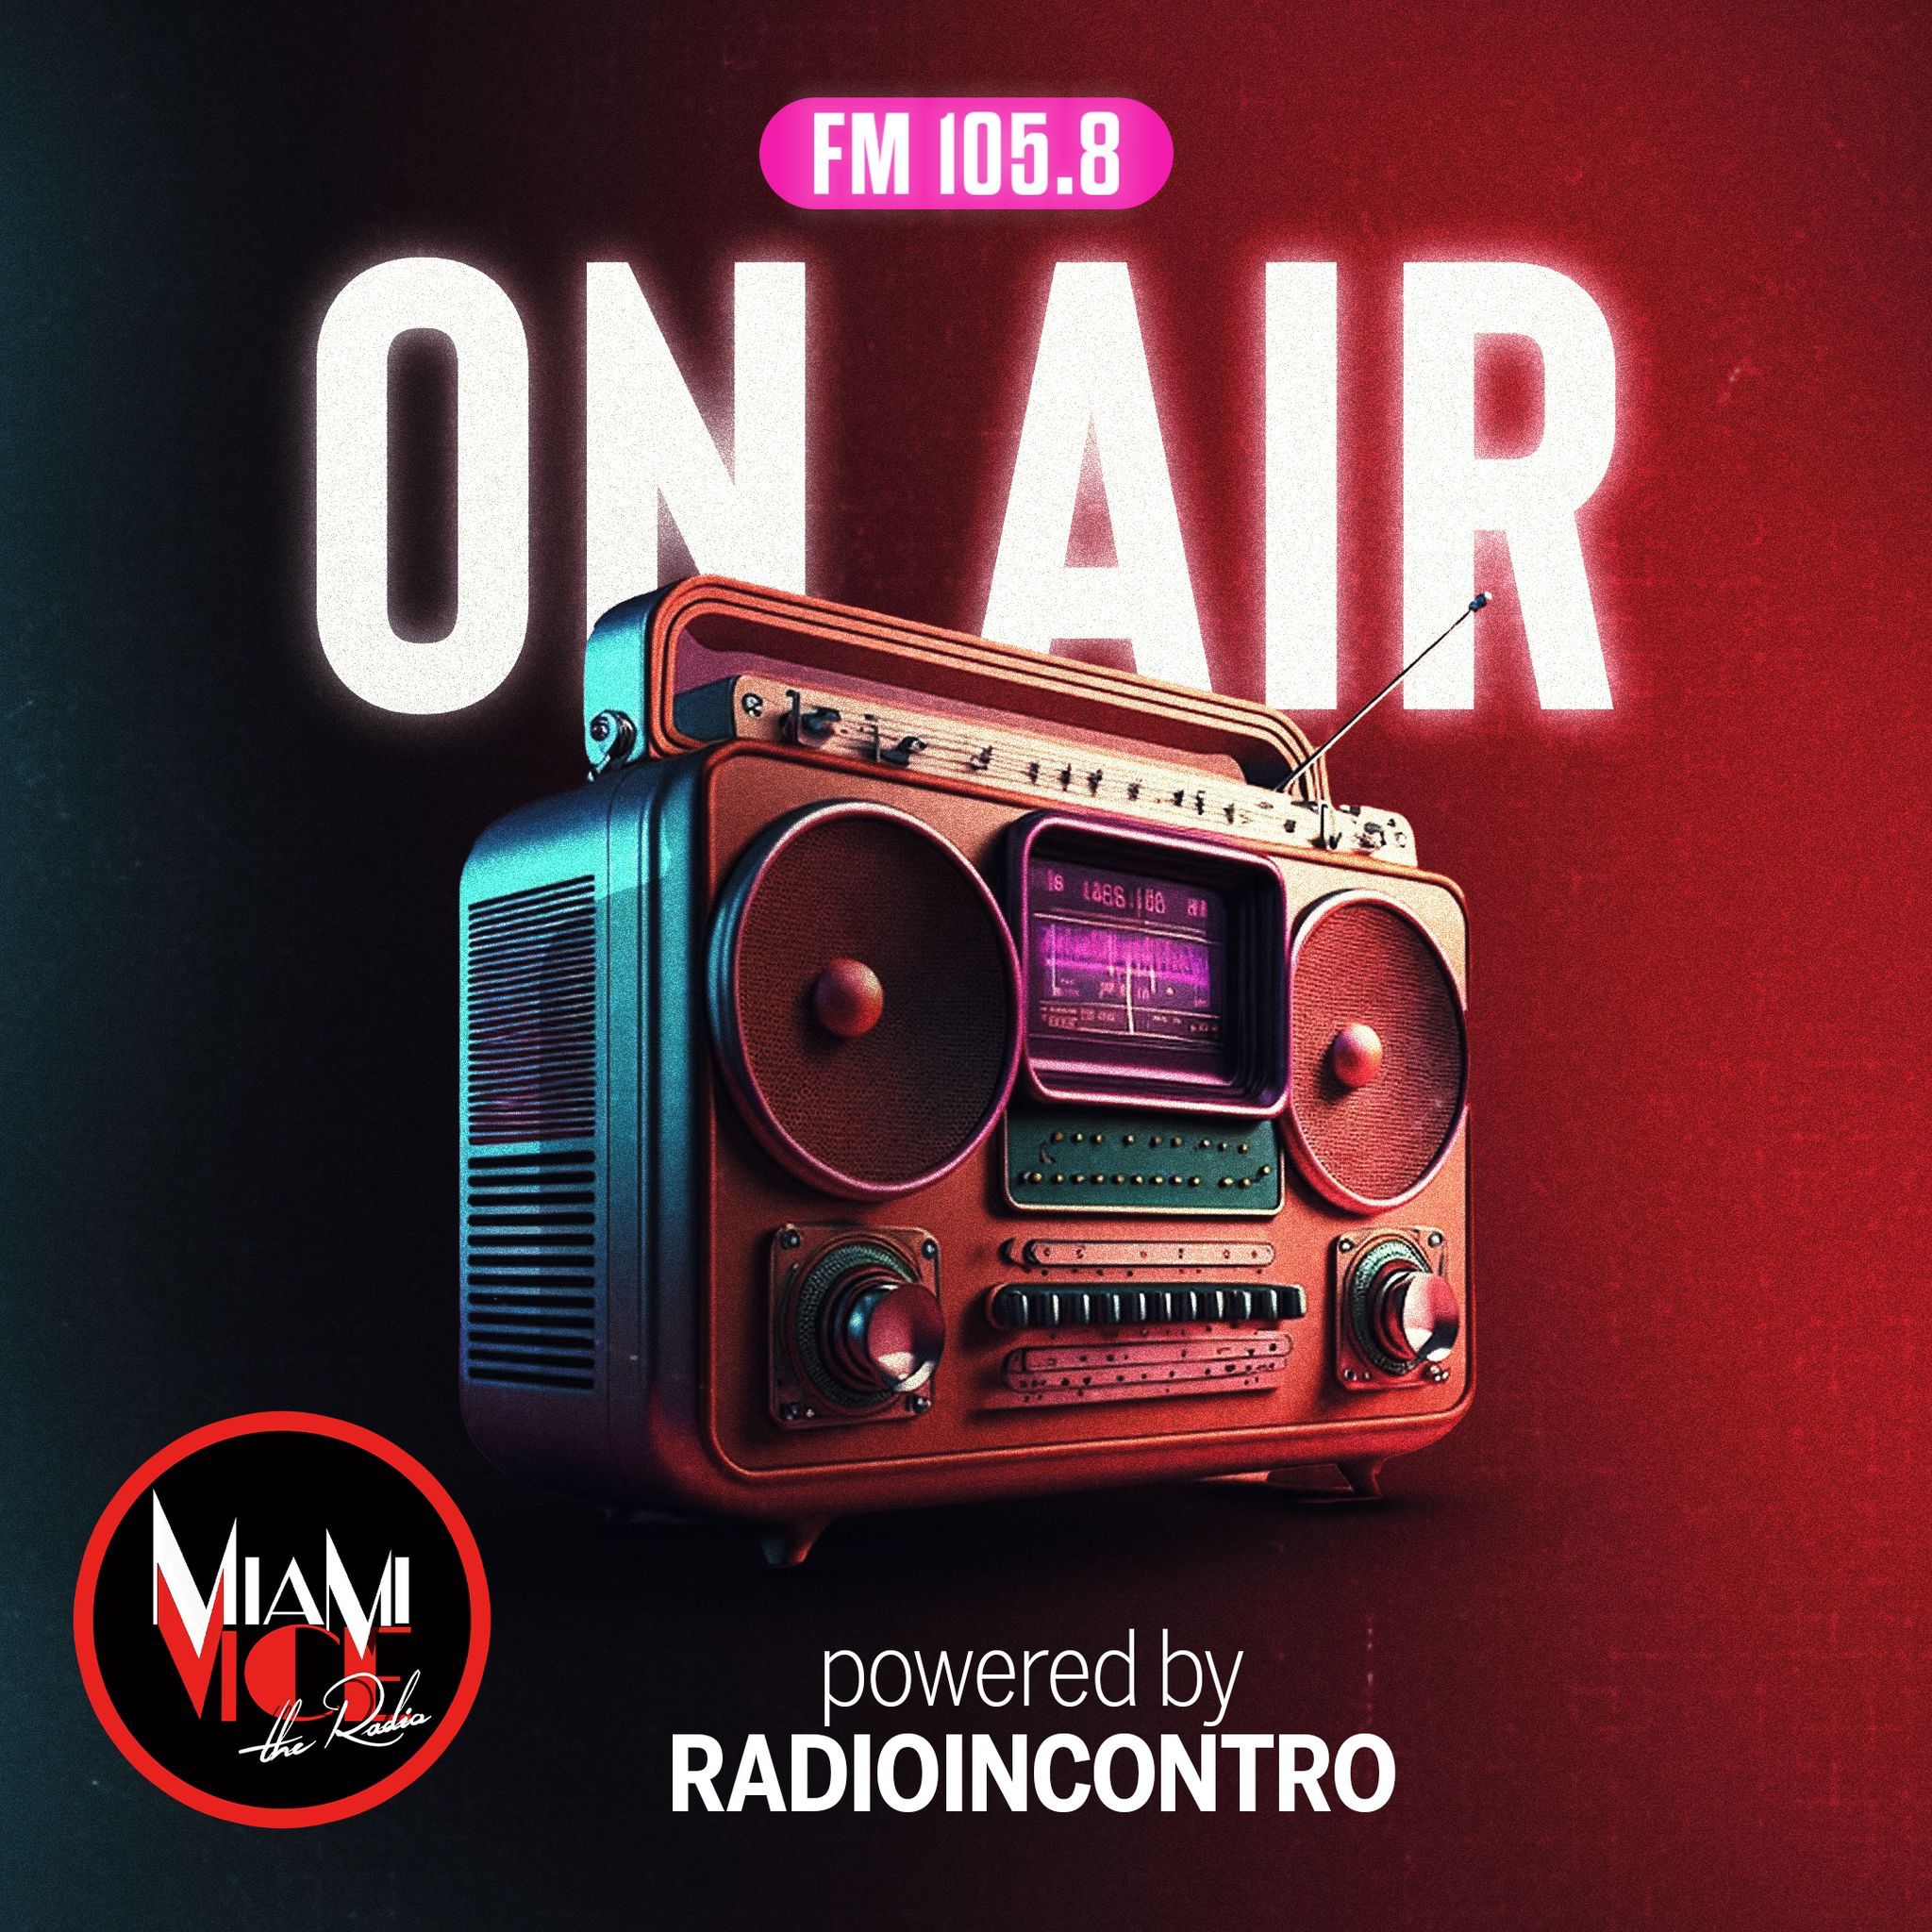 Radio Incontro e Miami Vice Radio annunciano la collaborazione sui 105.8 FM